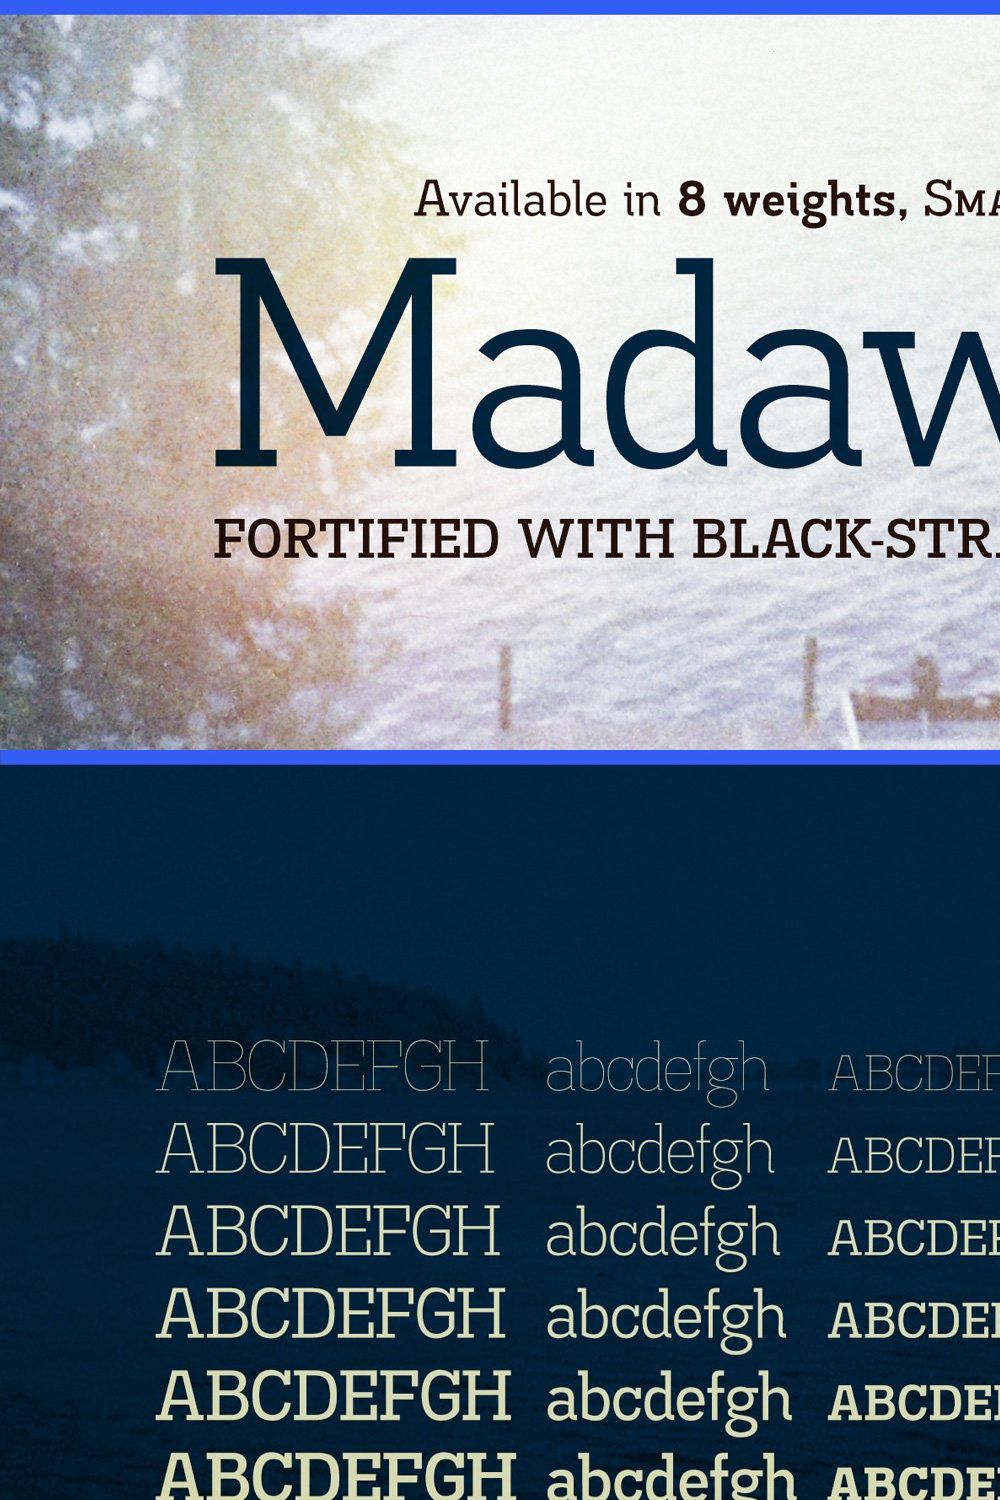 Madawaska pinterest preview image.